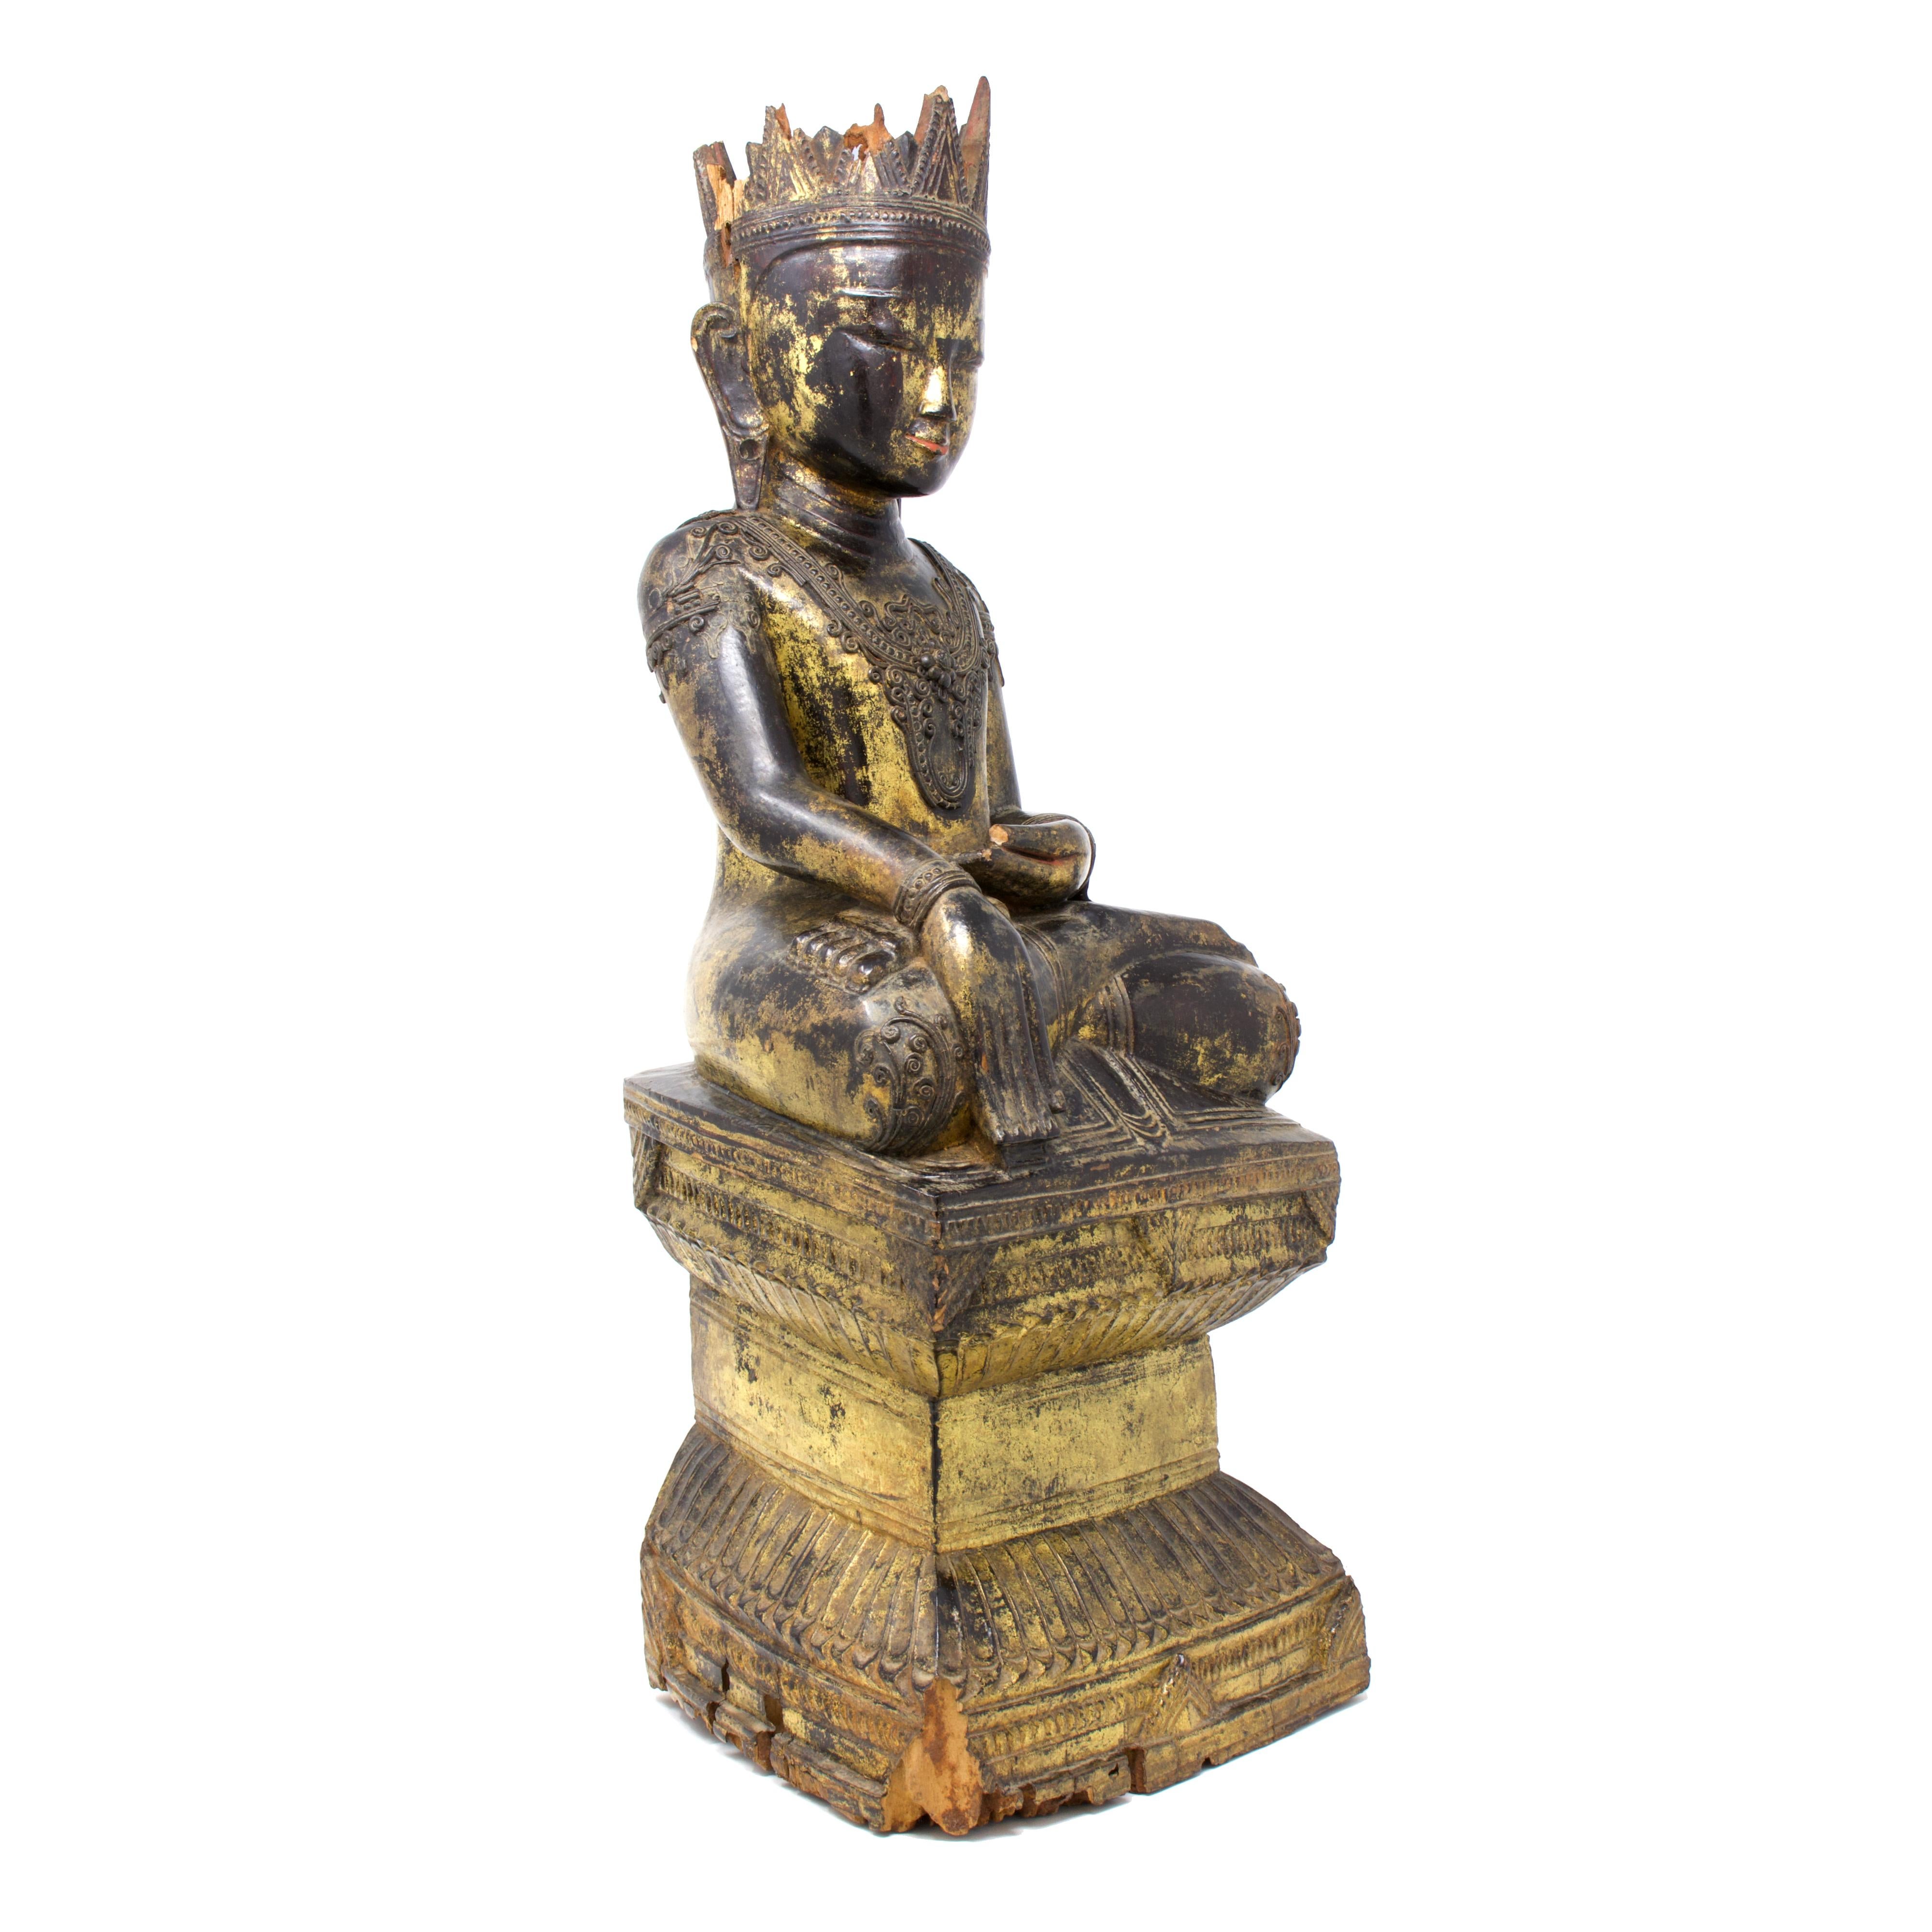 Antikes Shan (Tai Yai) Jambupati Buddha Bildnis, Holz, Lack und Blattgold, Konbaung Reich (1752-1885)
Ein gekrönter Stil, der die nordthailändische Ikonographie mit der Ästhetik der burmesischen Herrschaft in der Region verbindet. Die Figur wird in